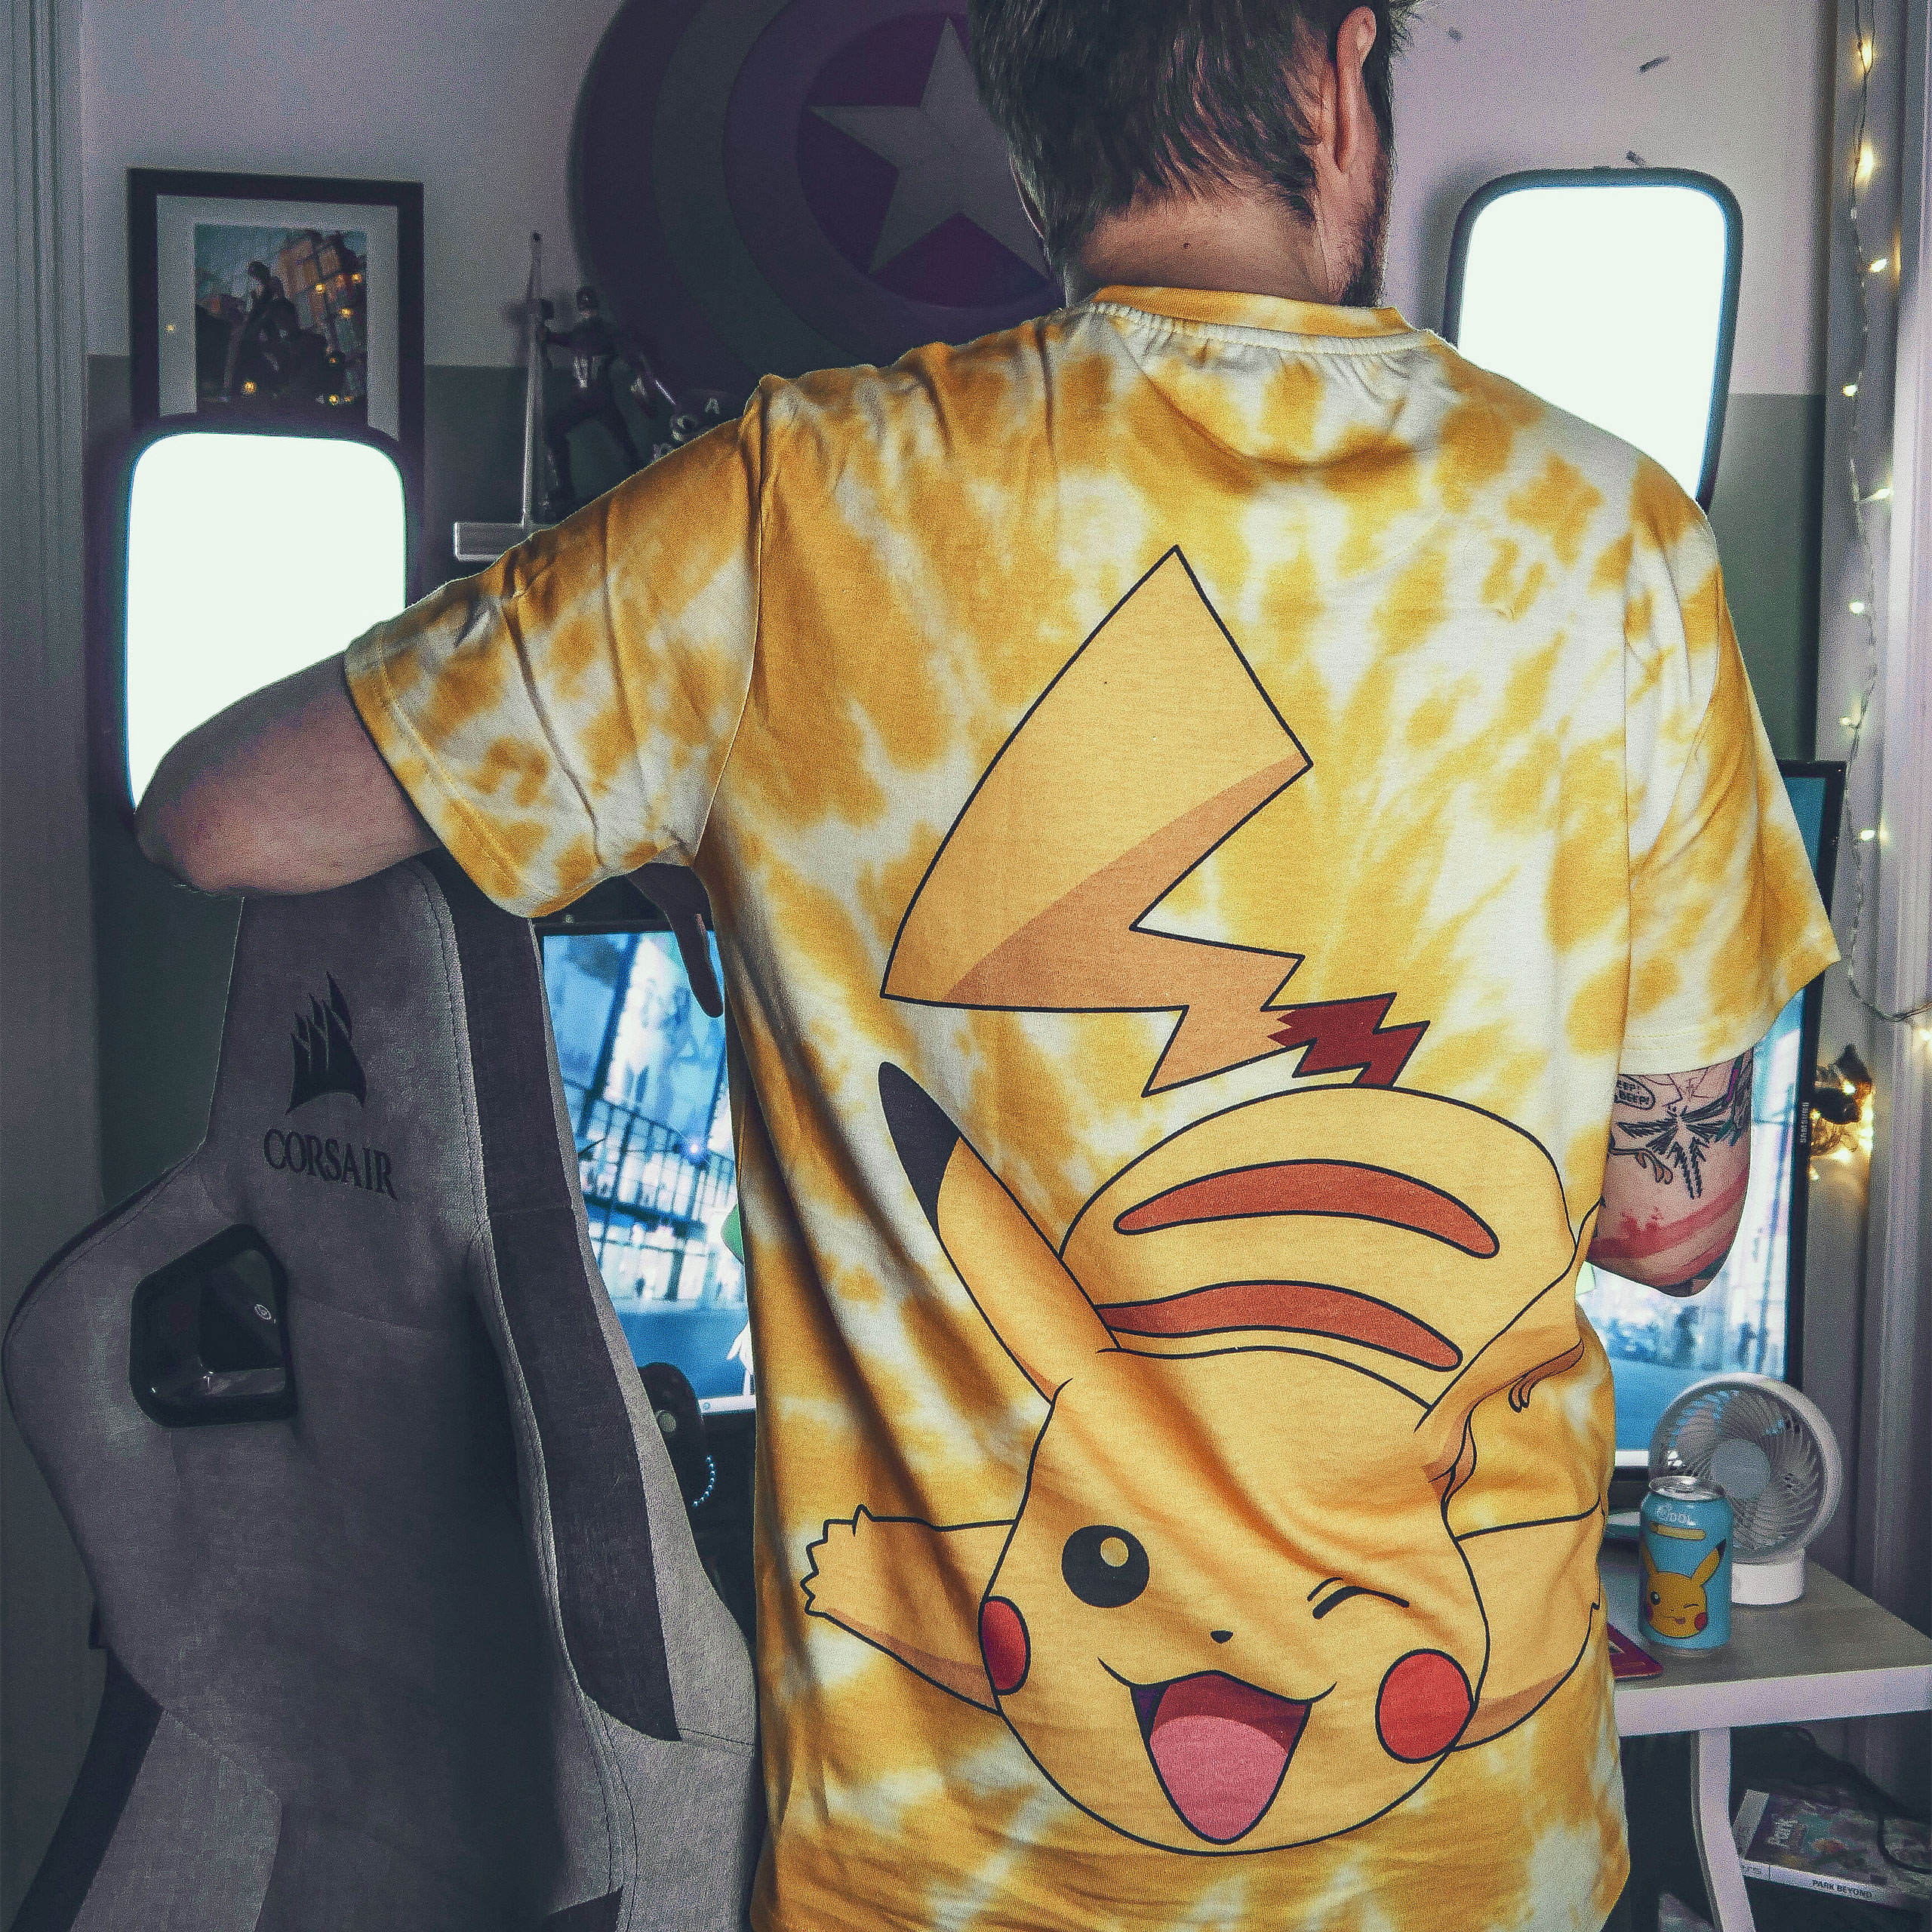 Pokemon - Ash en Pikachu T-shirt geel